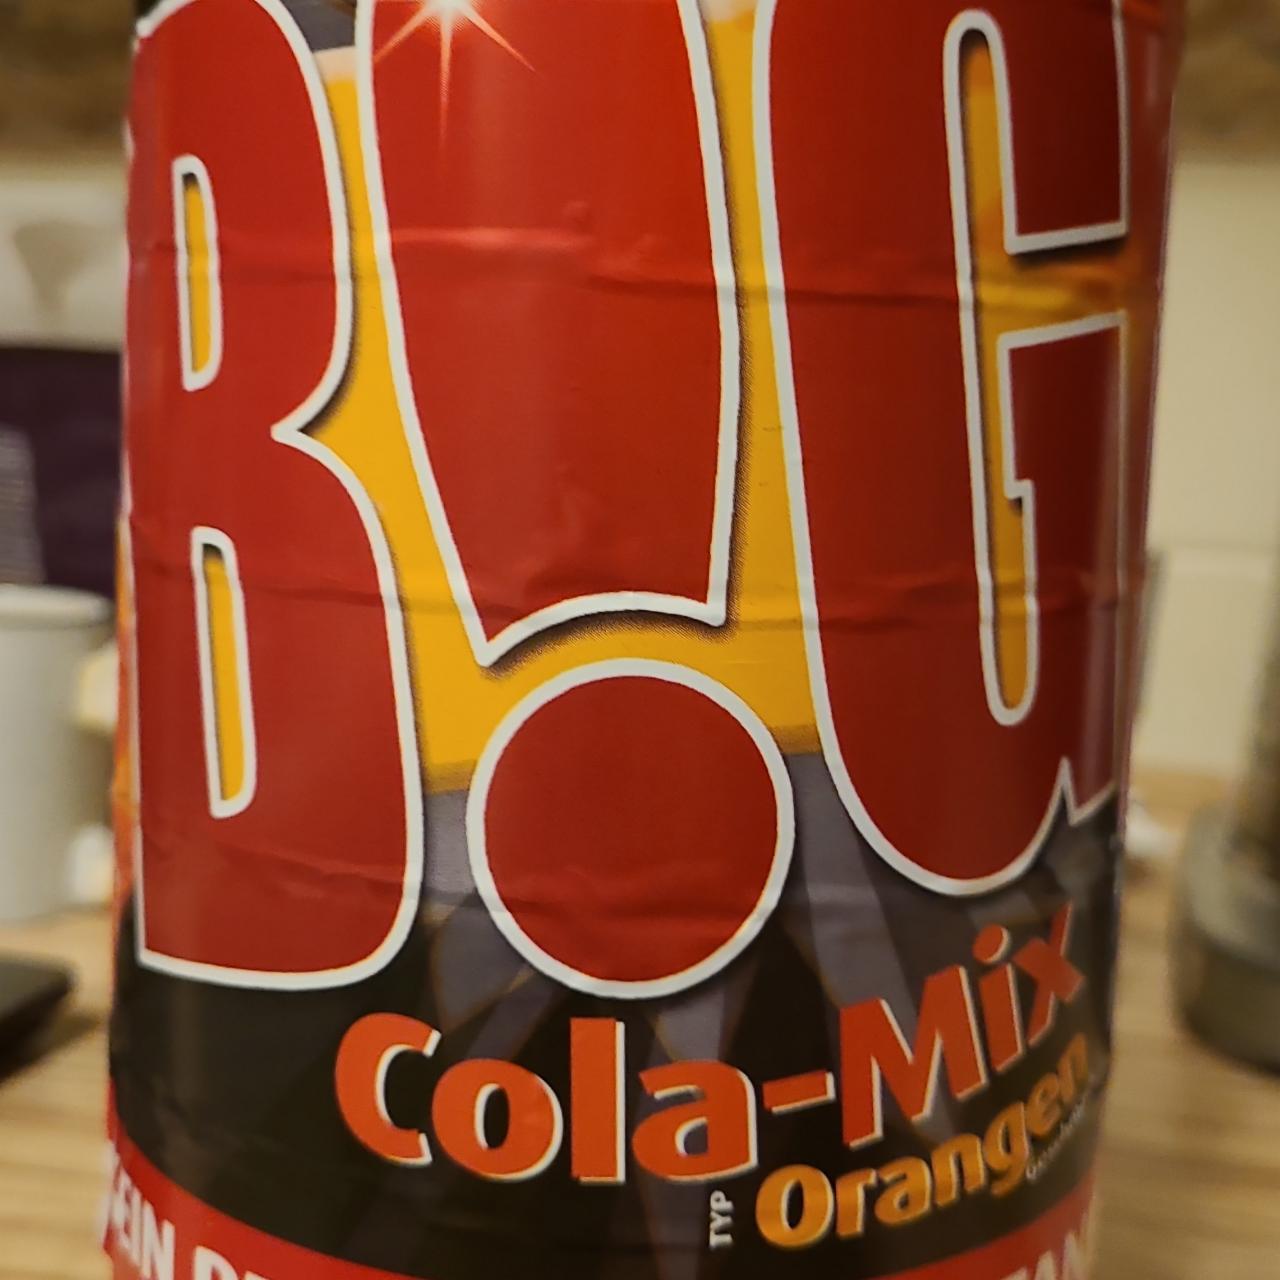 Fotografie - B!G Cola-Mix Orangen